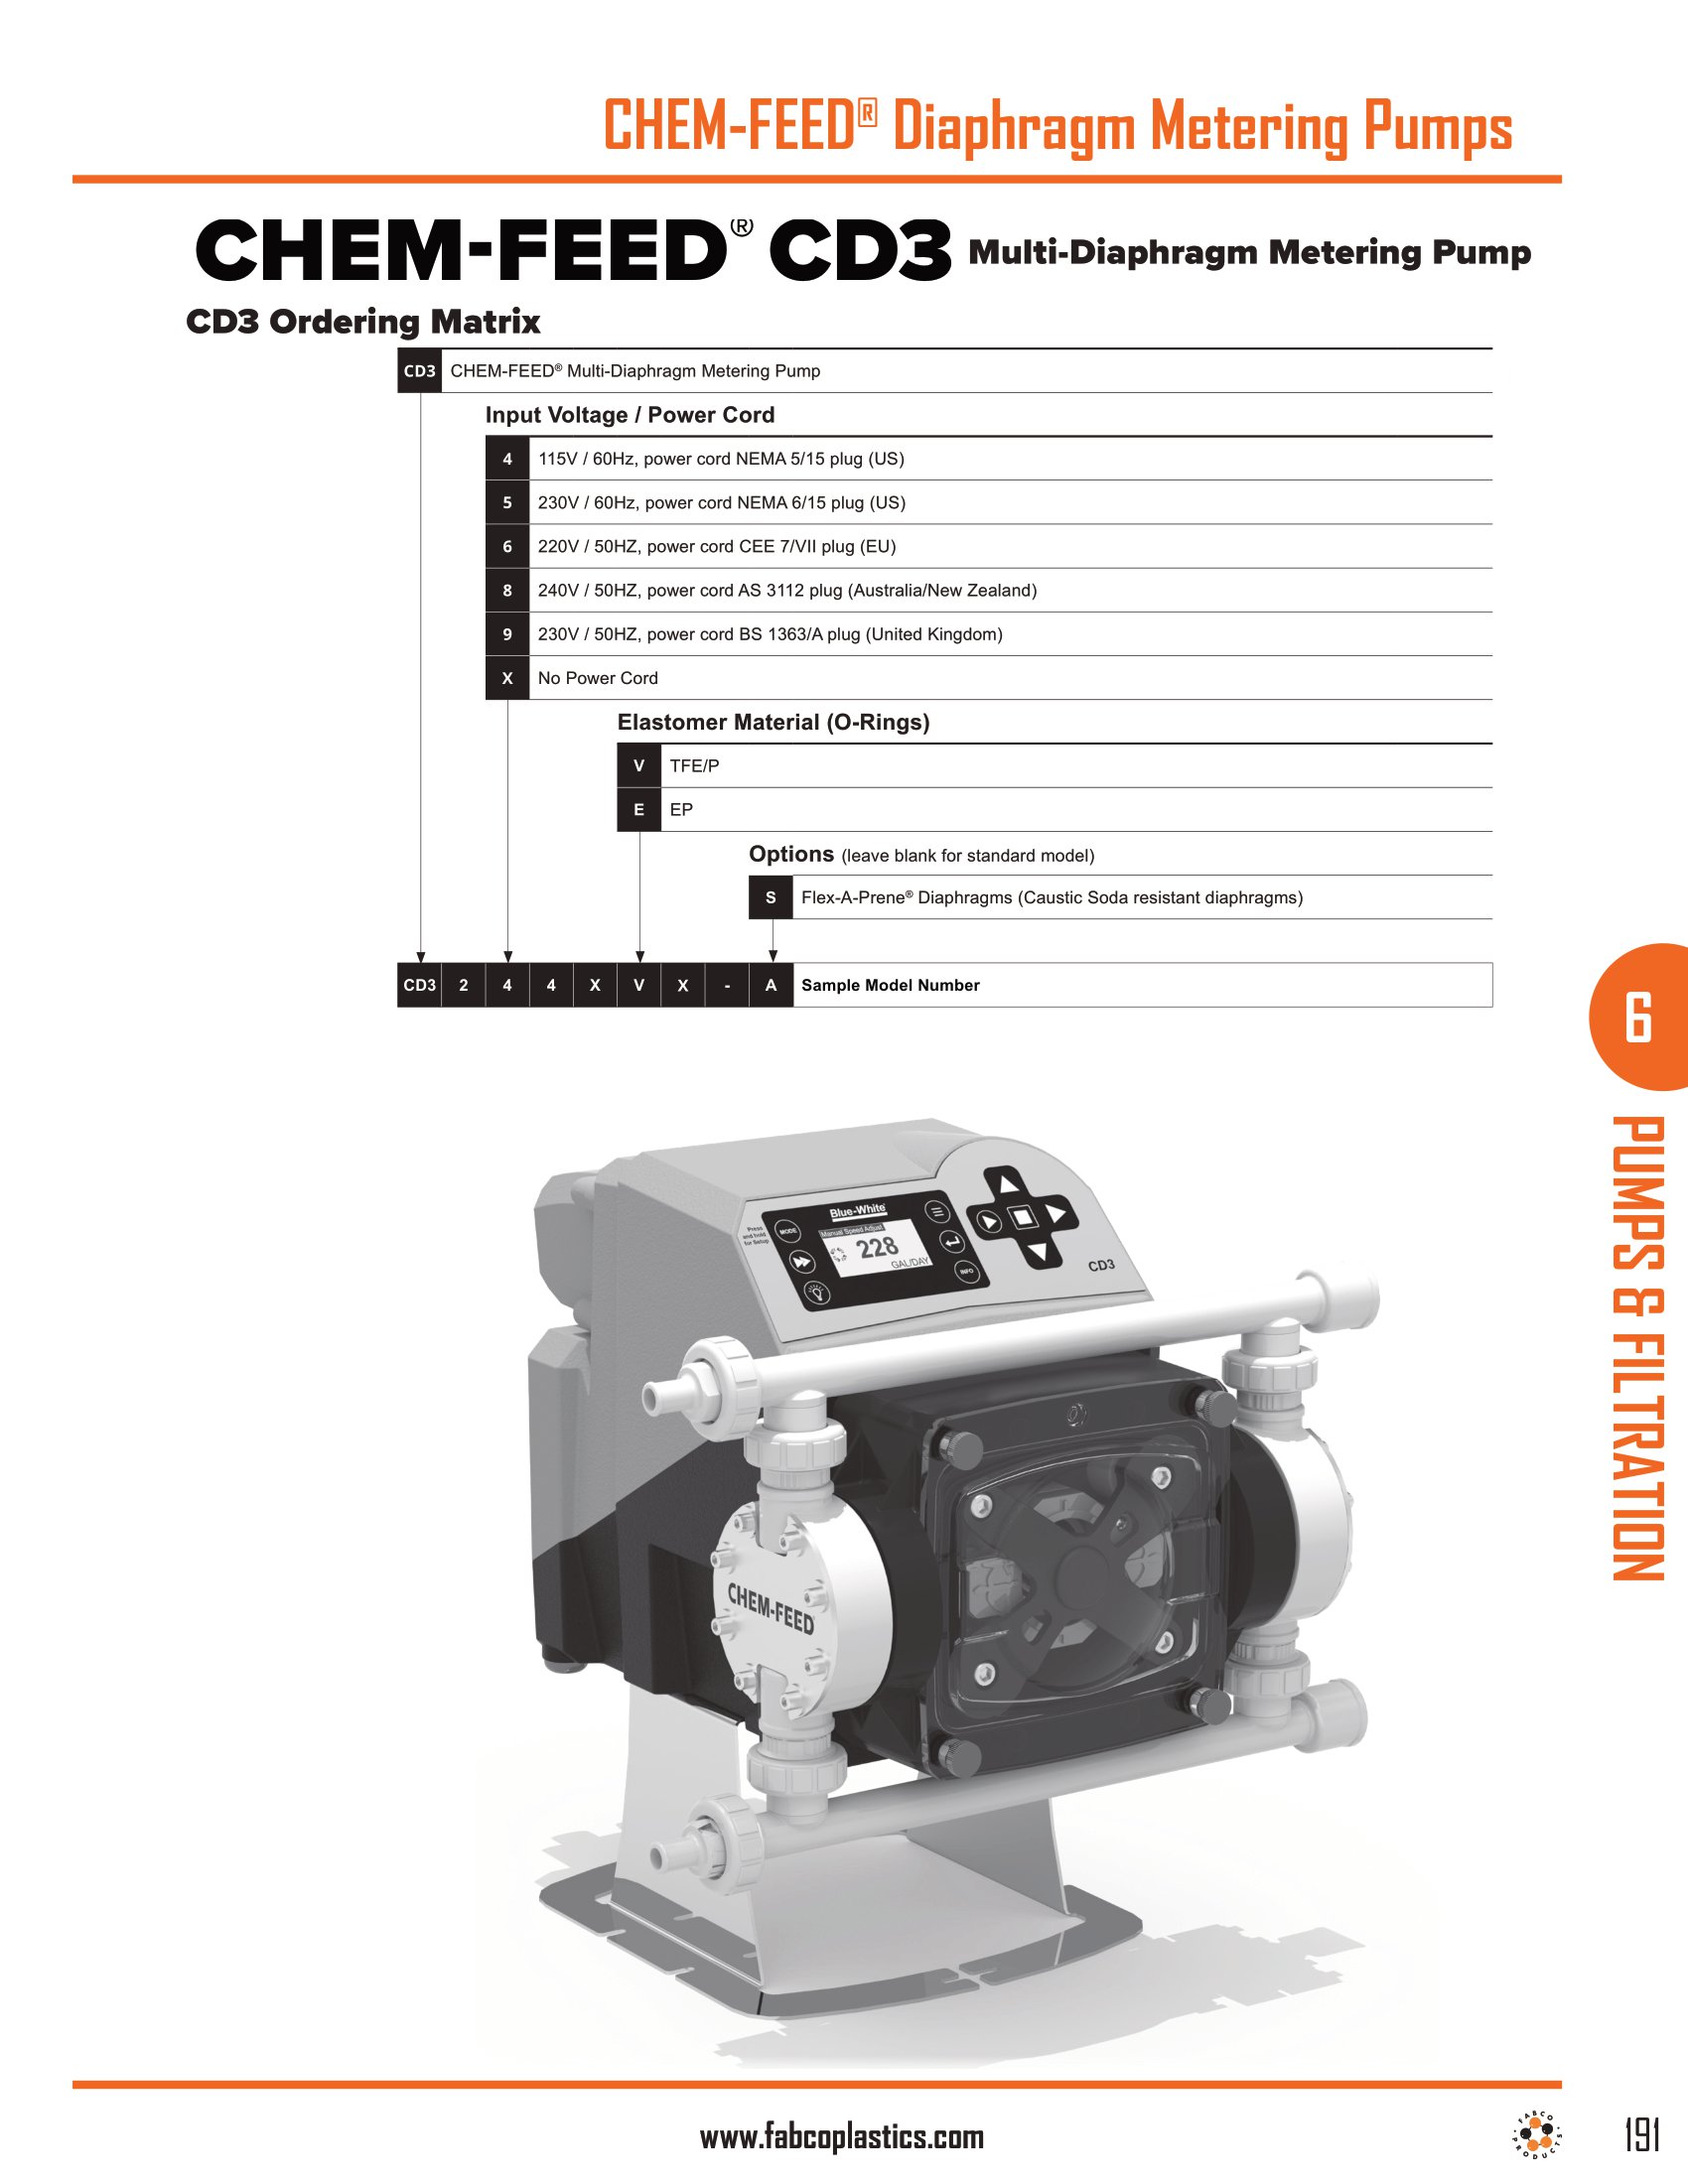 CHEM-FEED Diaphragm Metering Pumps